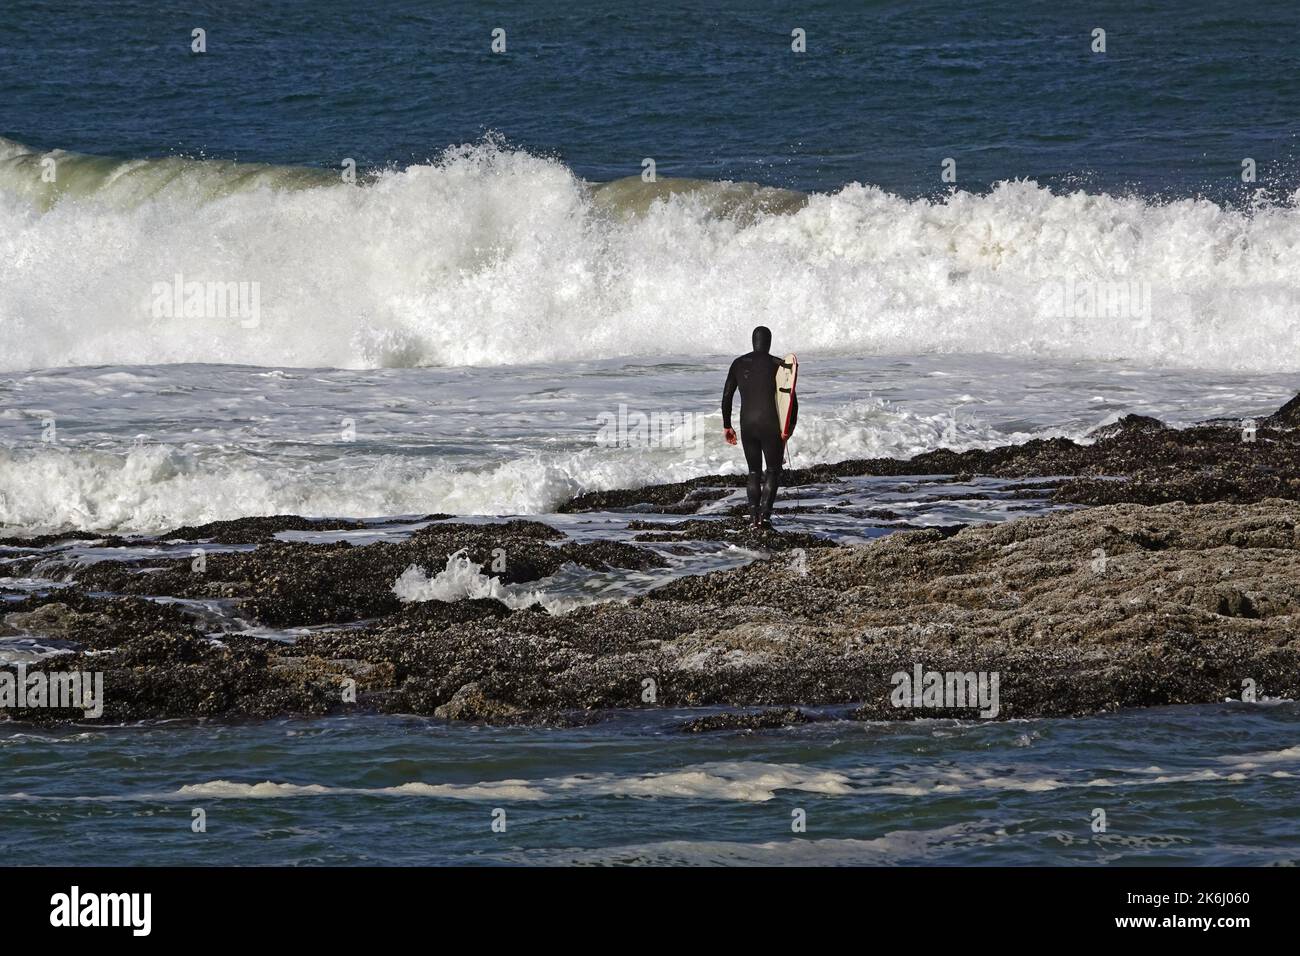 Un surfista con traje de neopreno se prepara para ir al agua desde un arrecife rocoso a lo largo de la costa de Oregón cerca de la ciudad de Waldport, Oregón. El nadador es irreconocible Foto de stock